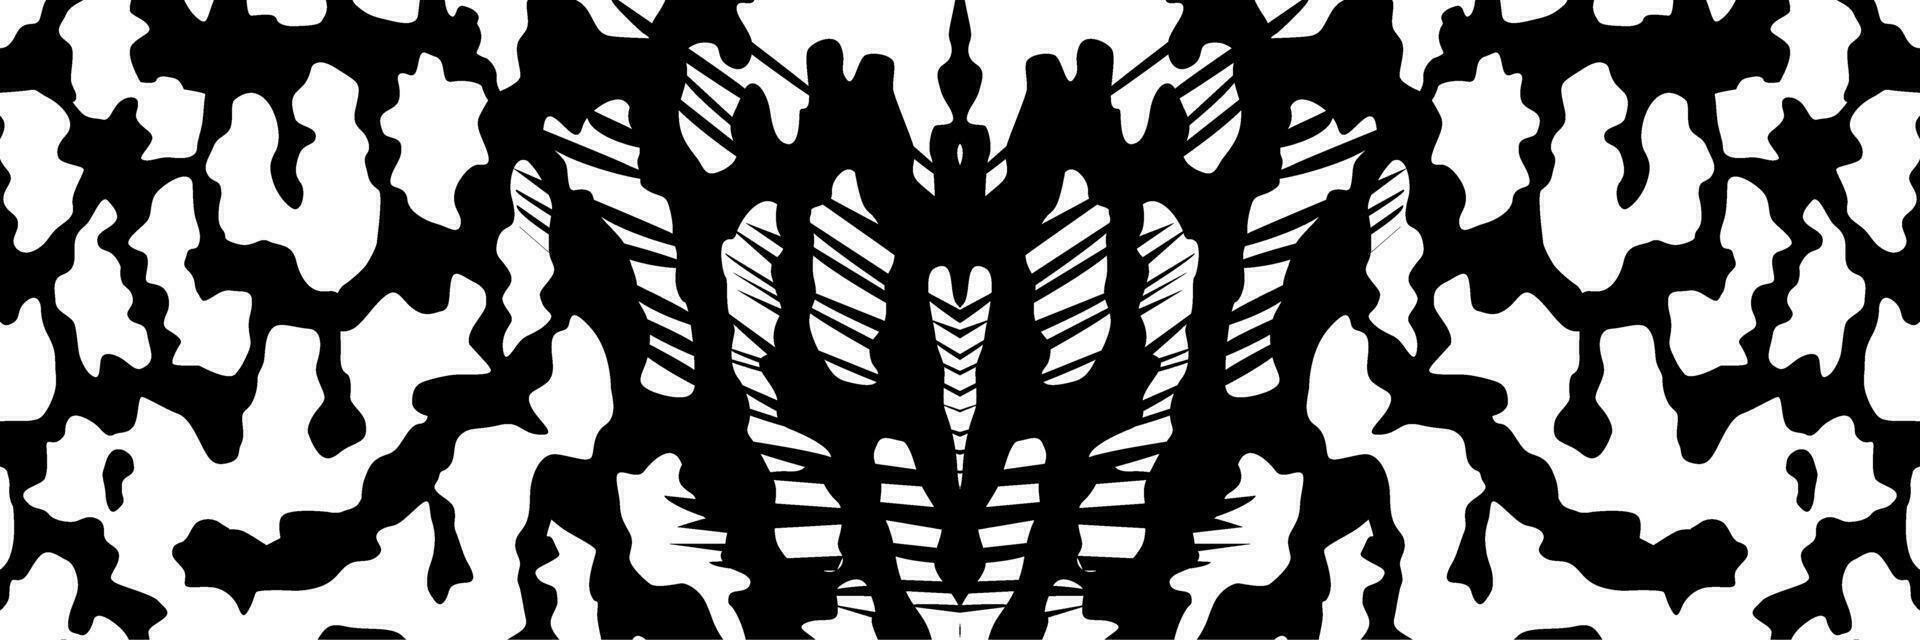 artistiek motieven patroon geïnspireerd door symphysodon of discus vis huid, voor decoratie, overladen, achtergrond, website, behang, mode, interieur, omslag, dier afdrukken, of grafisch ontwerp element vector